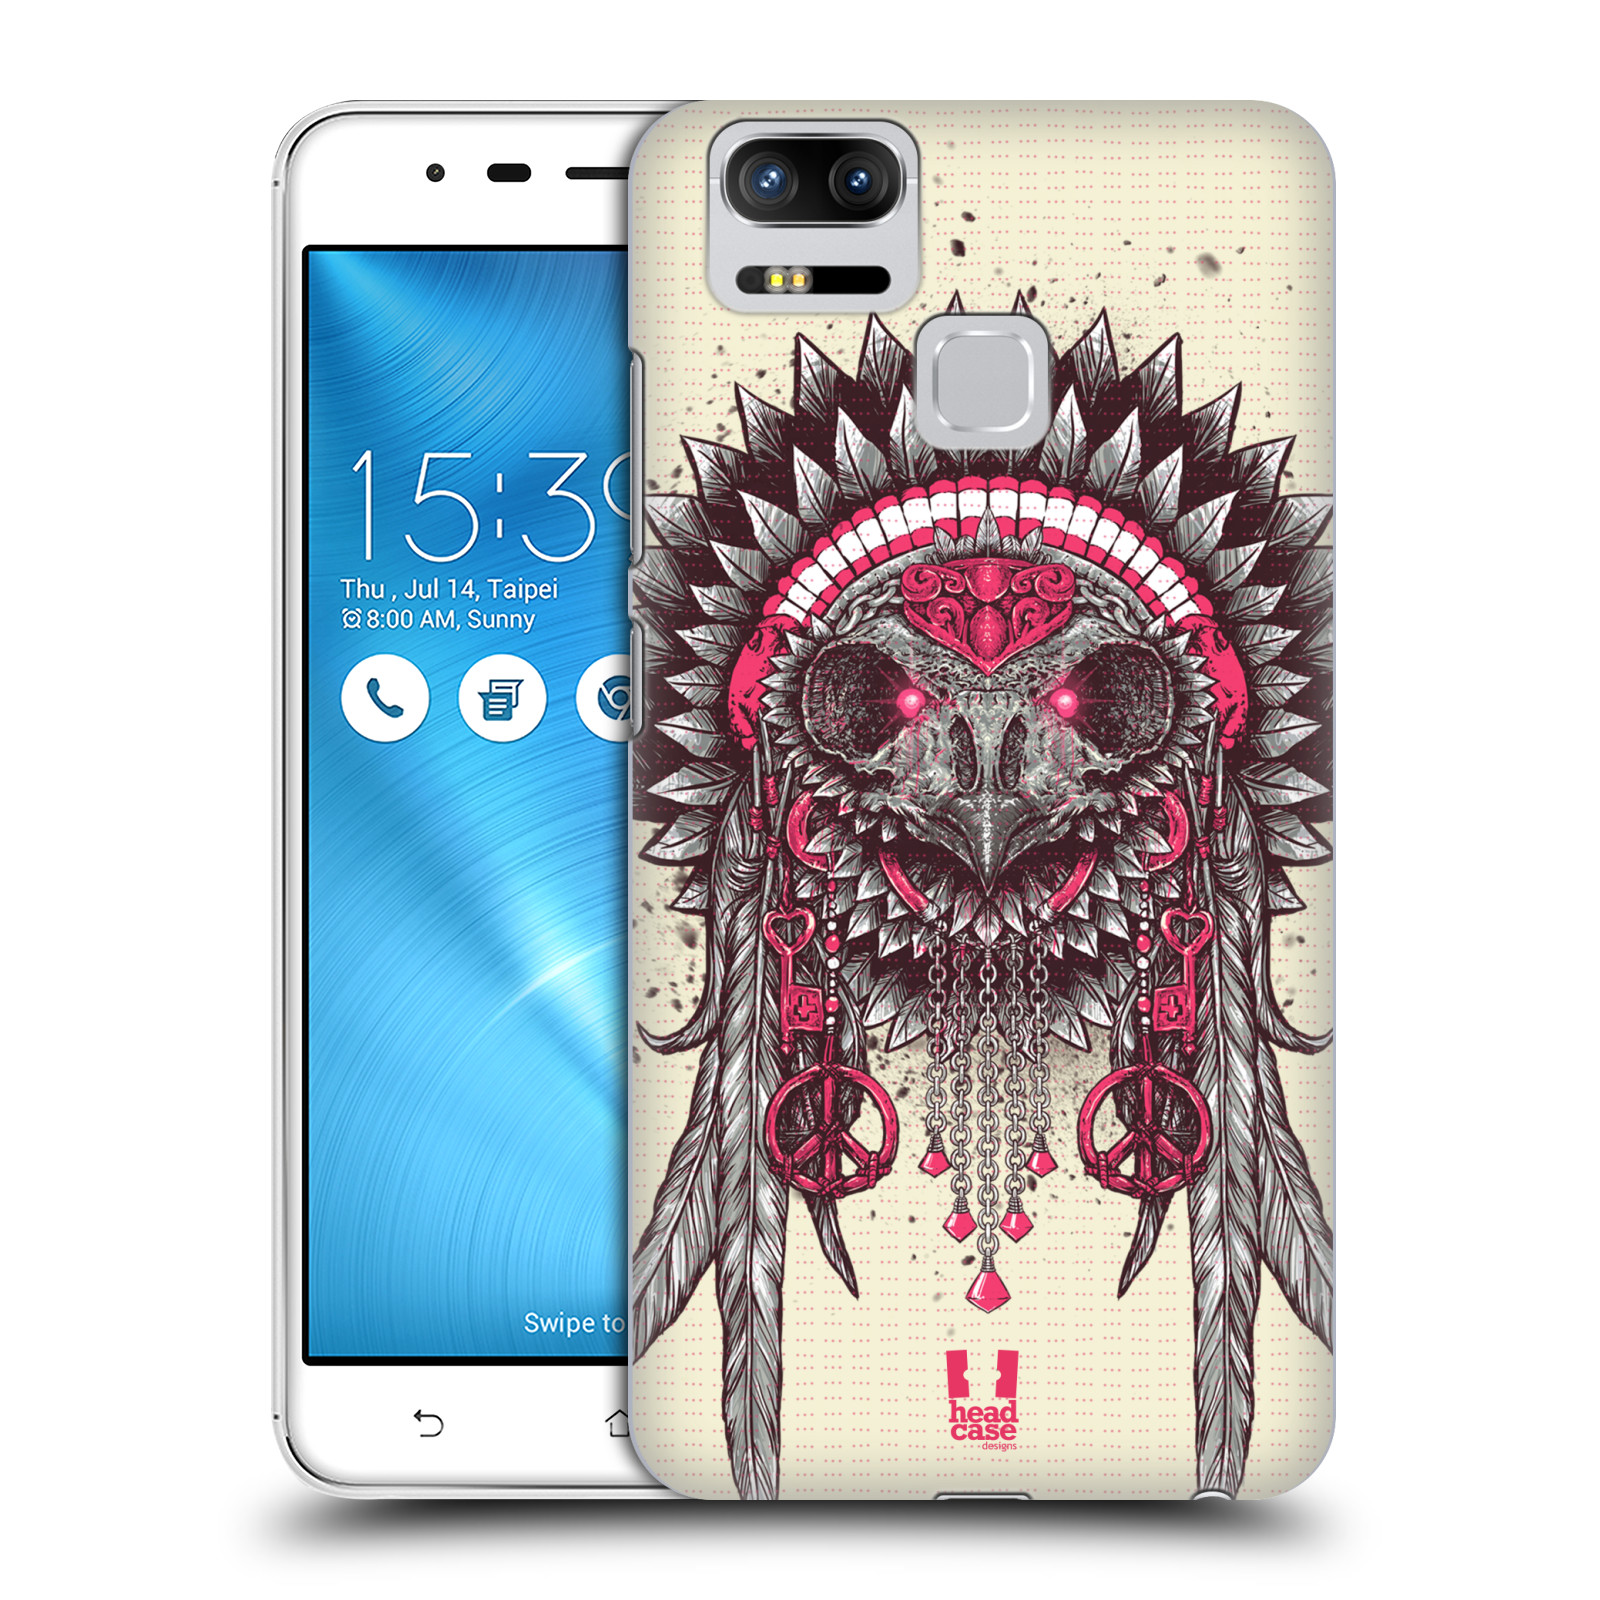 HEAD CASE plastový obal na mobil Asus Zenfone 3 Zoom ZE553KL vzor Etnické sovy růžová a šedá